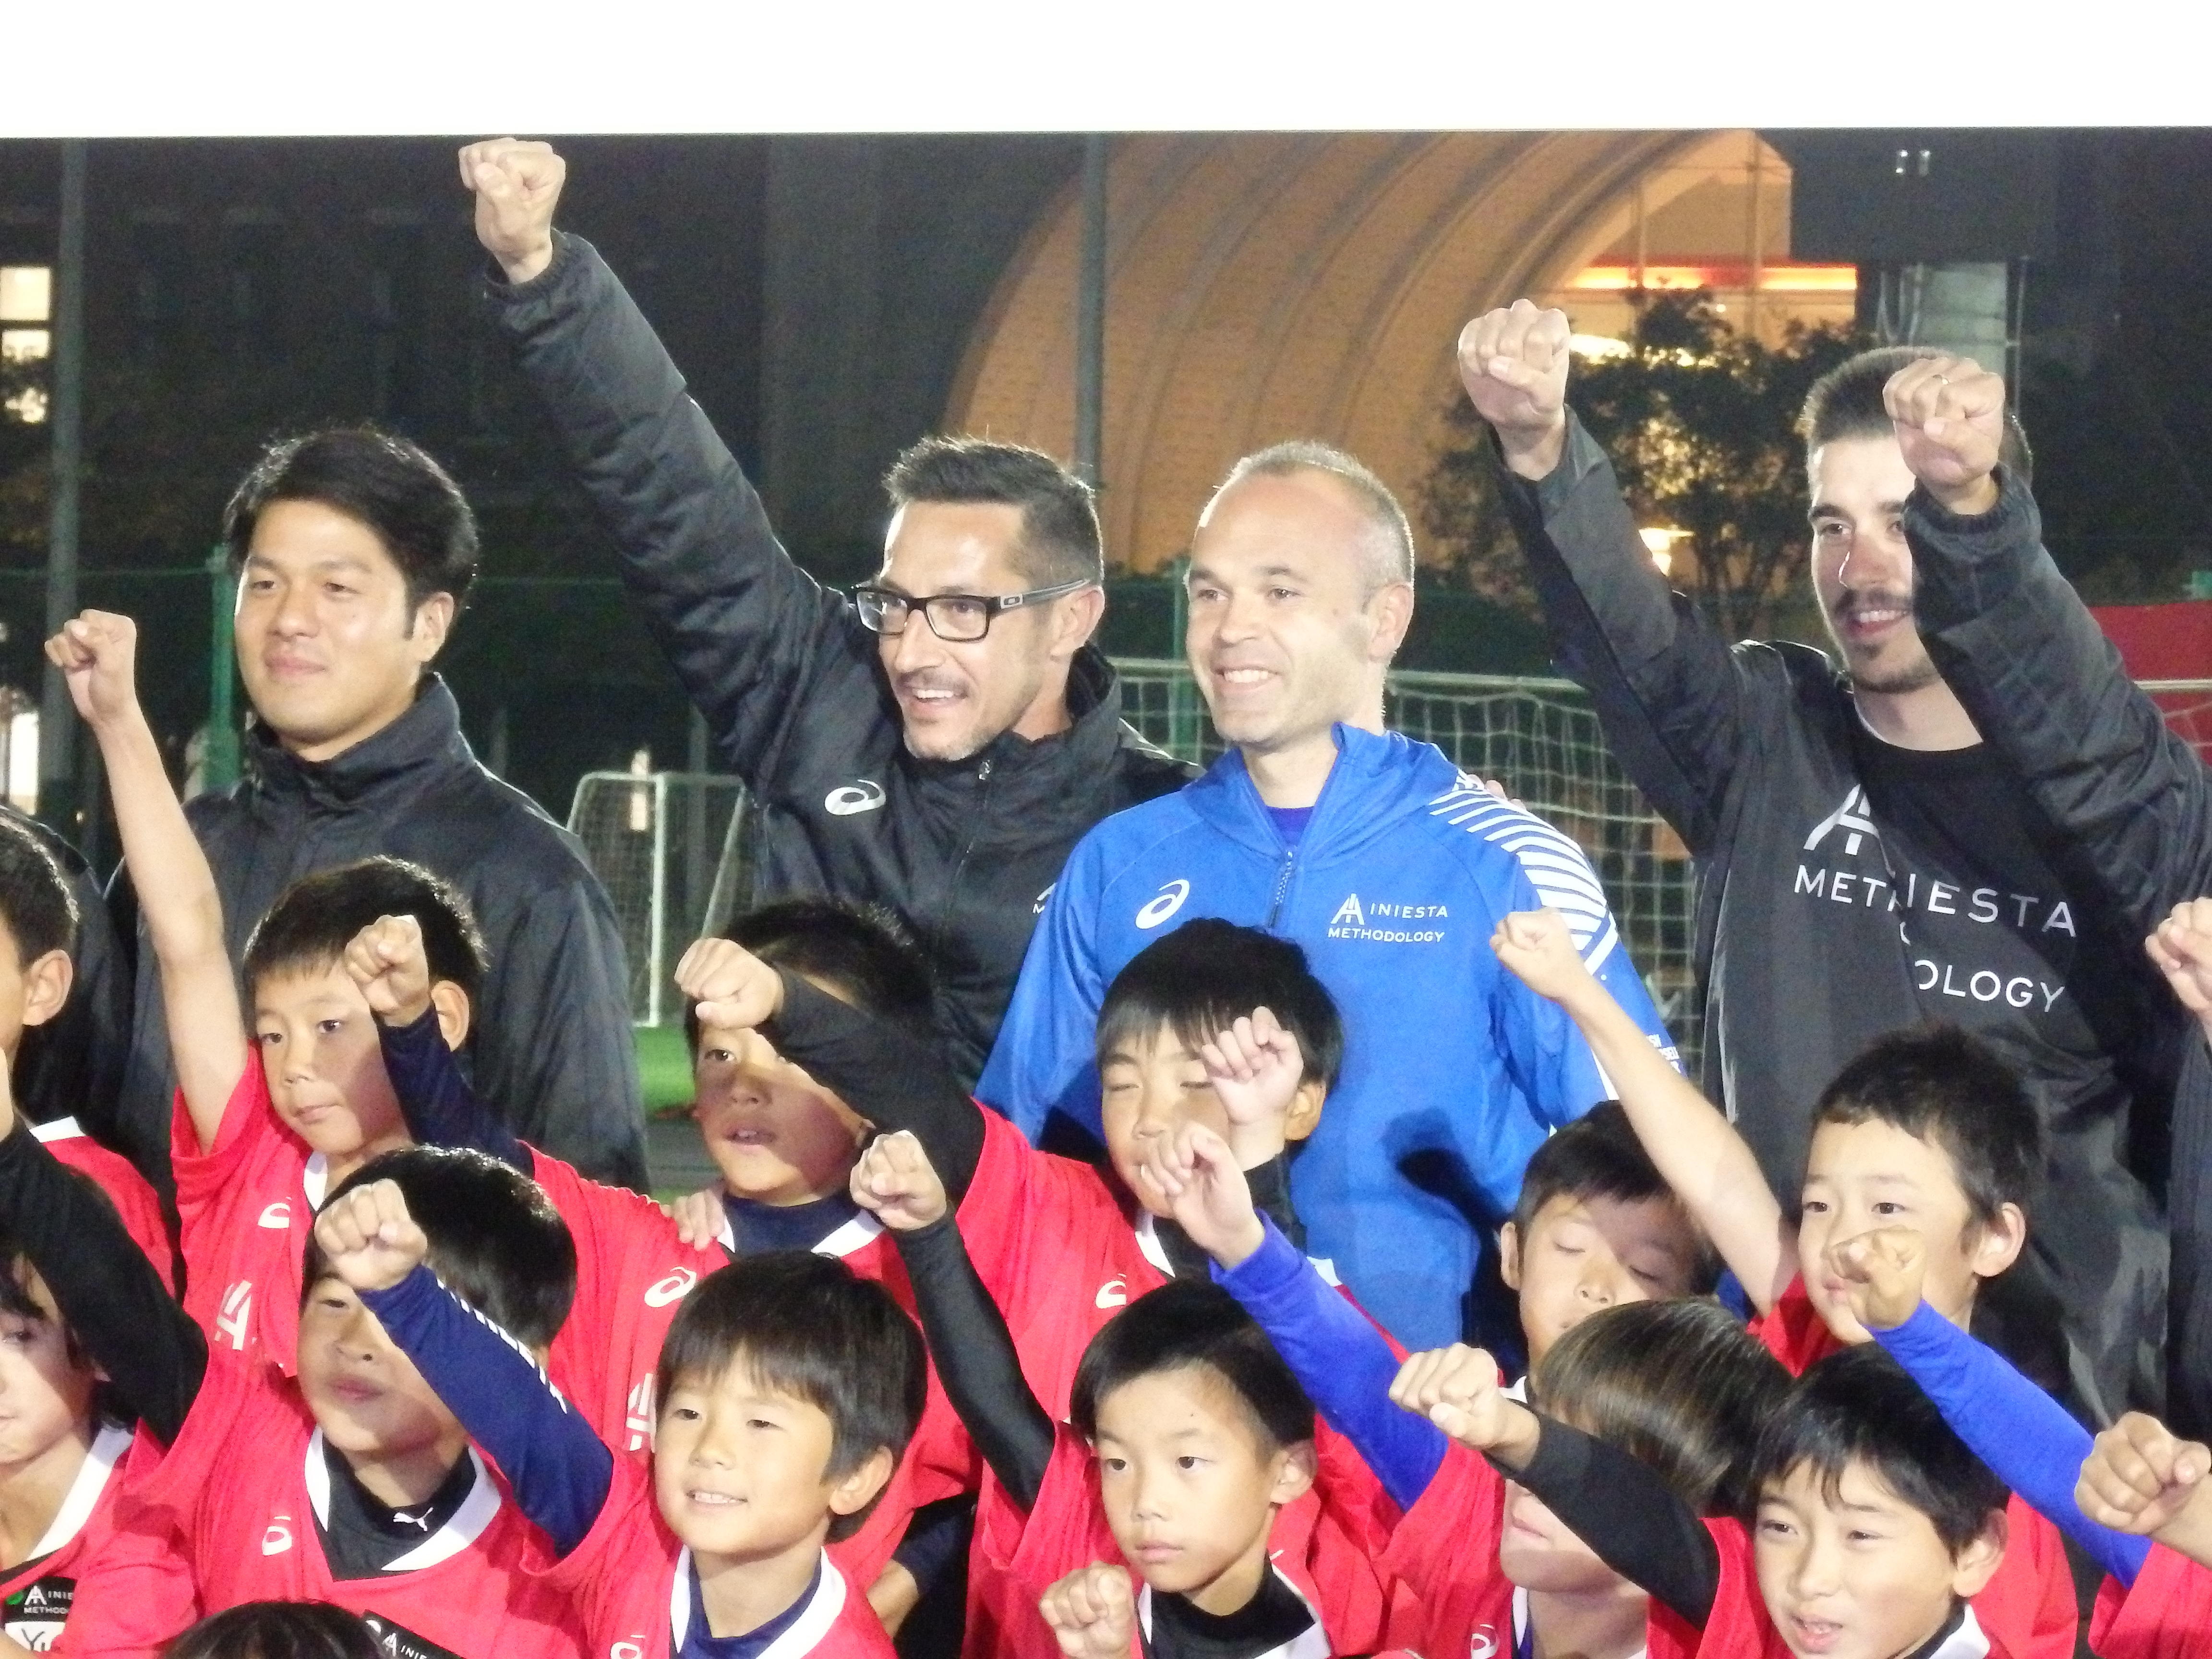 サッカーの理解の仕方を教えたい イニエスタが日本の子どもと共有したいこと サカイク